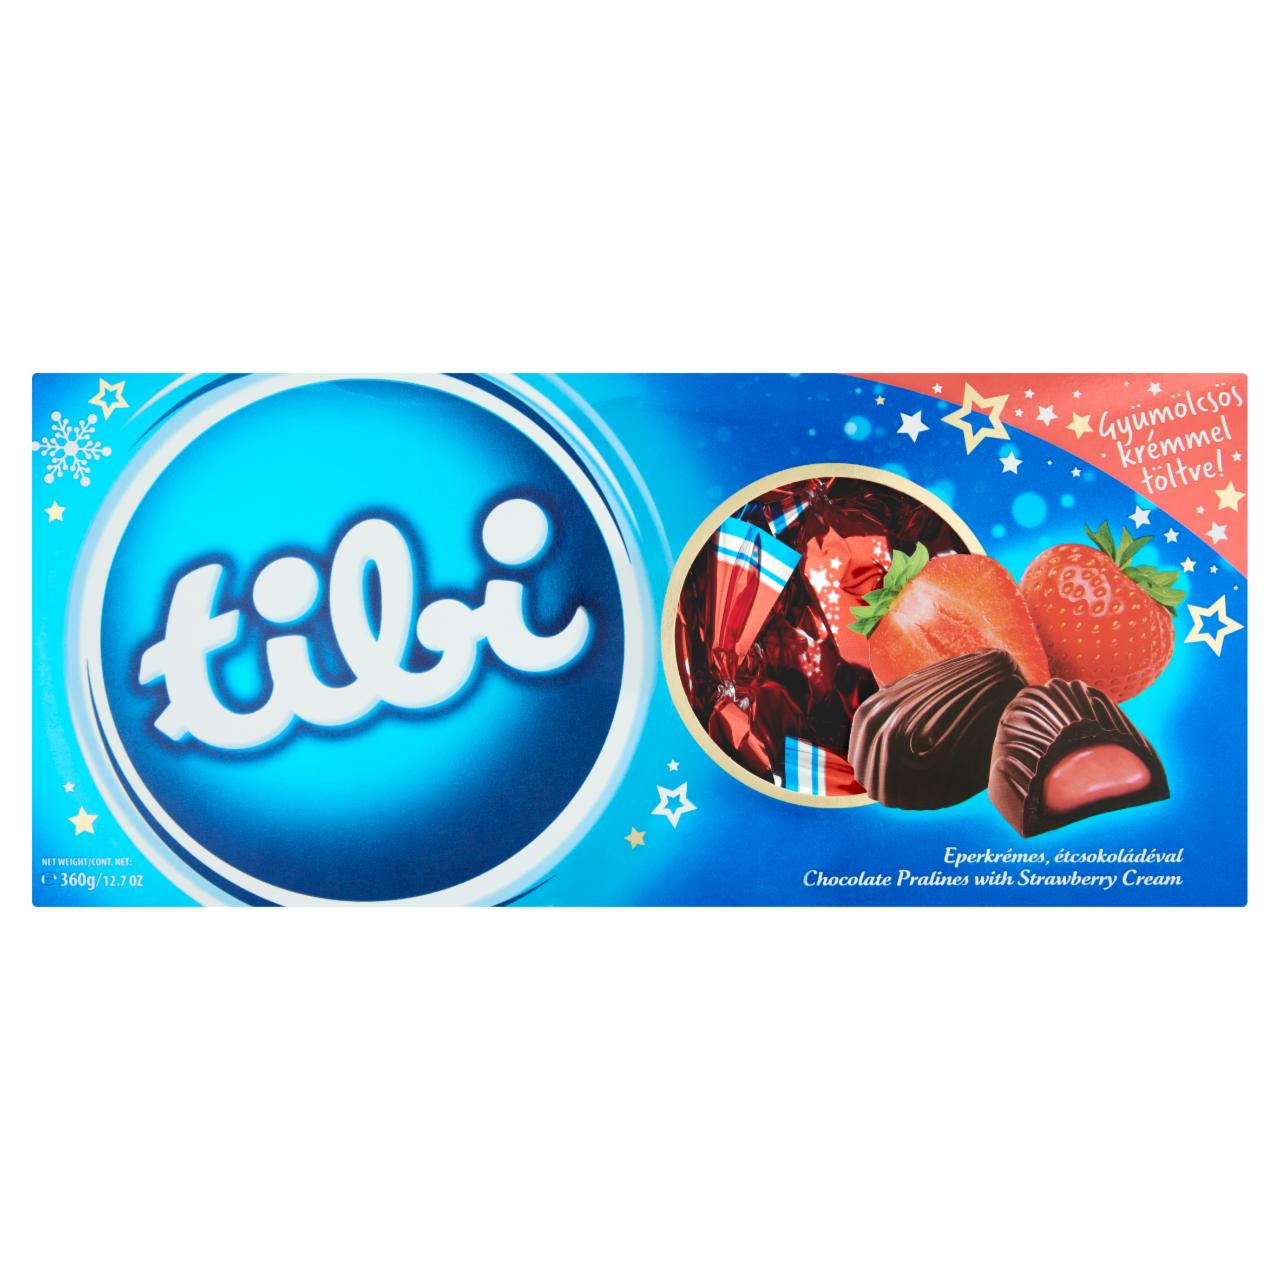 Képek - Tibi eperkrémes szaloncukor étcsokoládéval 360 g